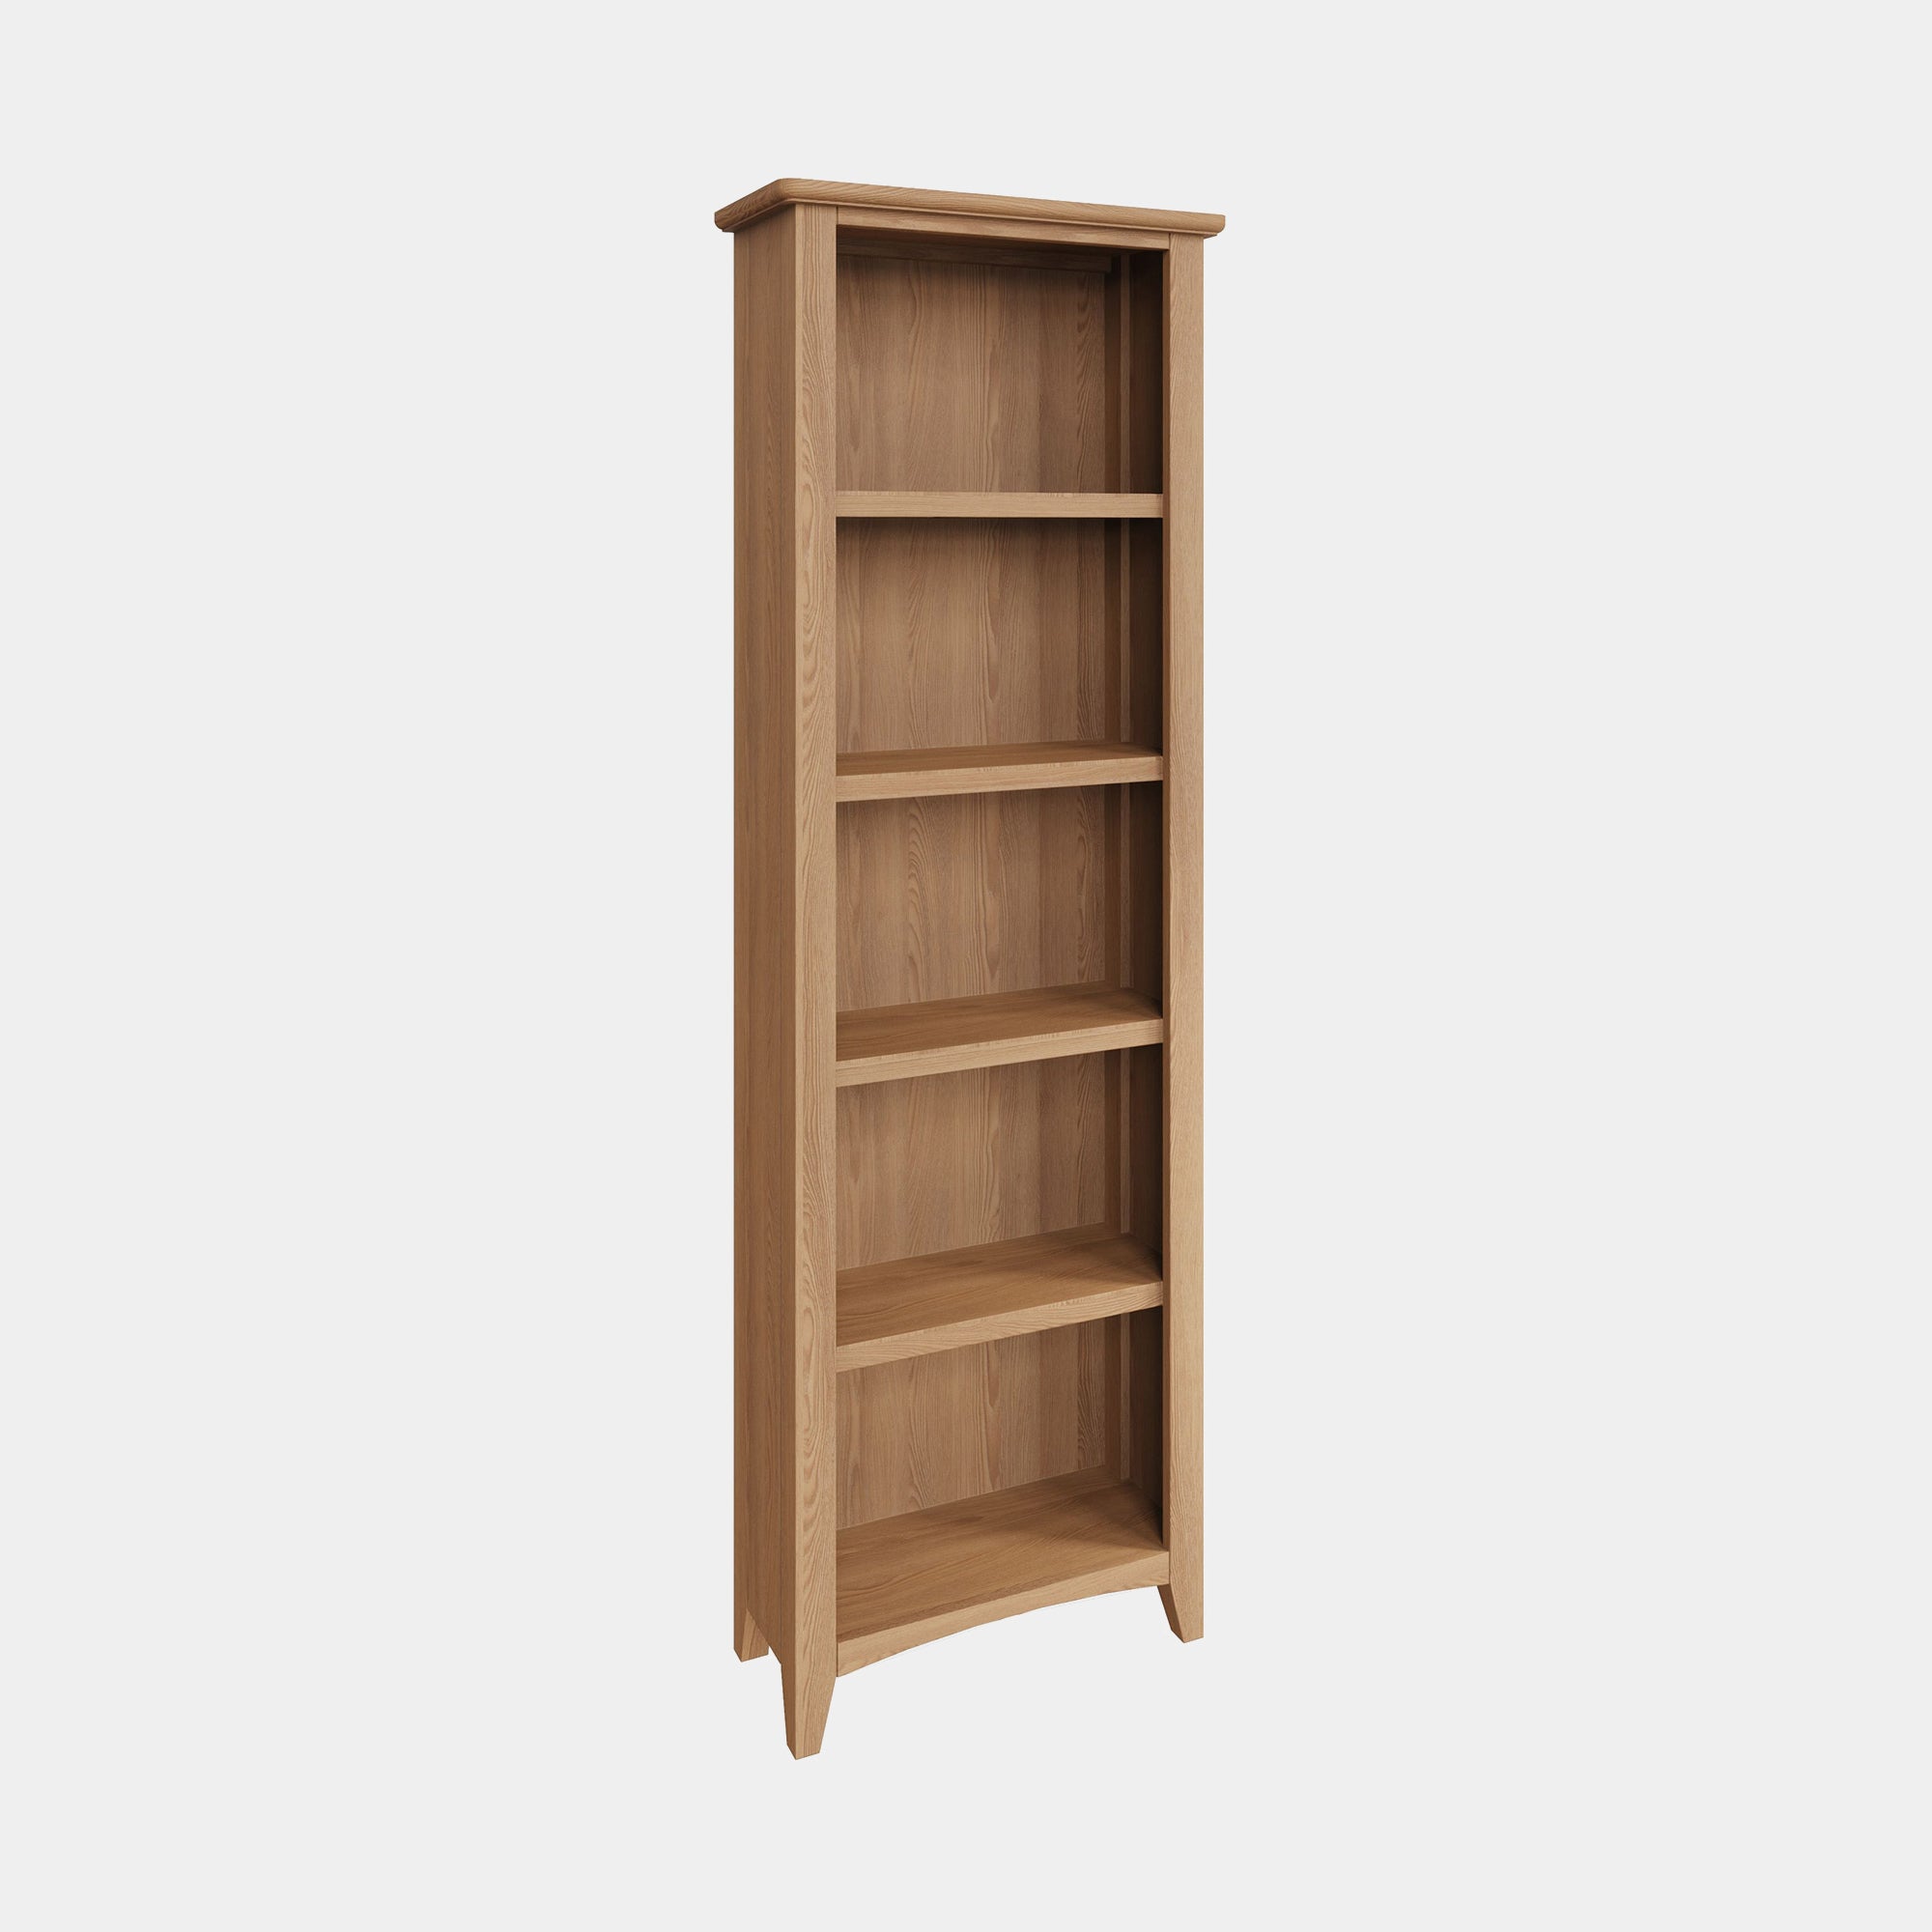 Burham - Large Bookcase Oak Finish